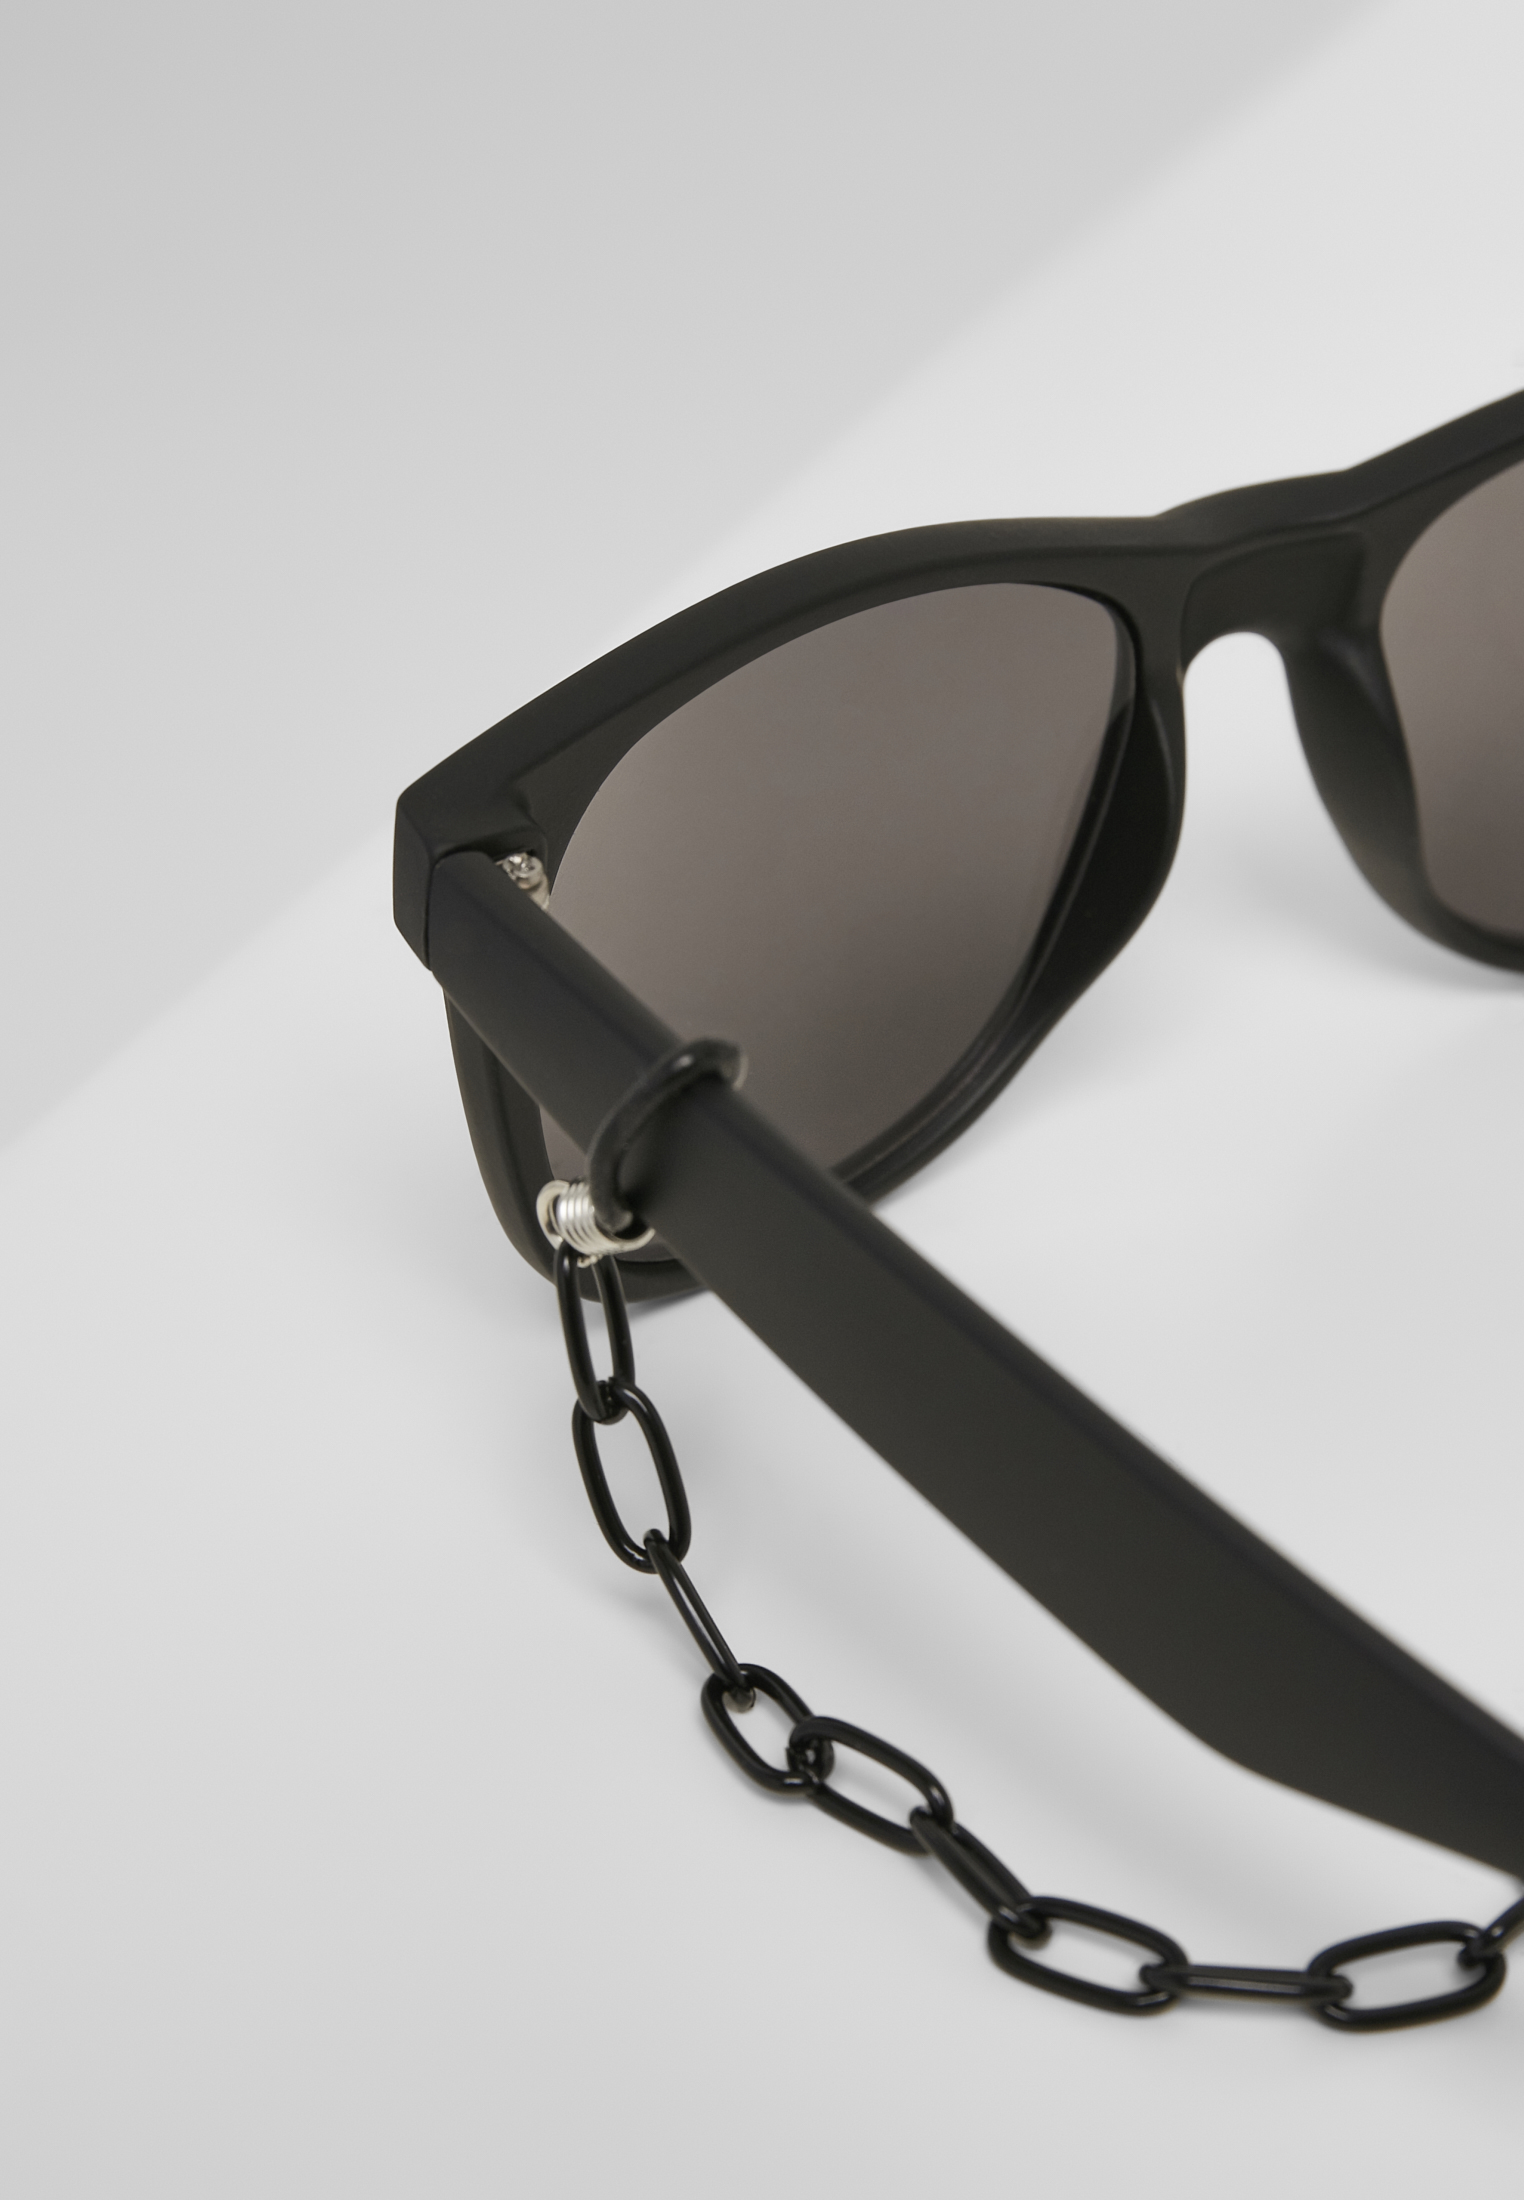 Sonnenbrillen Sunglasses Likoma Mirror With Chain in Farbe black/silver